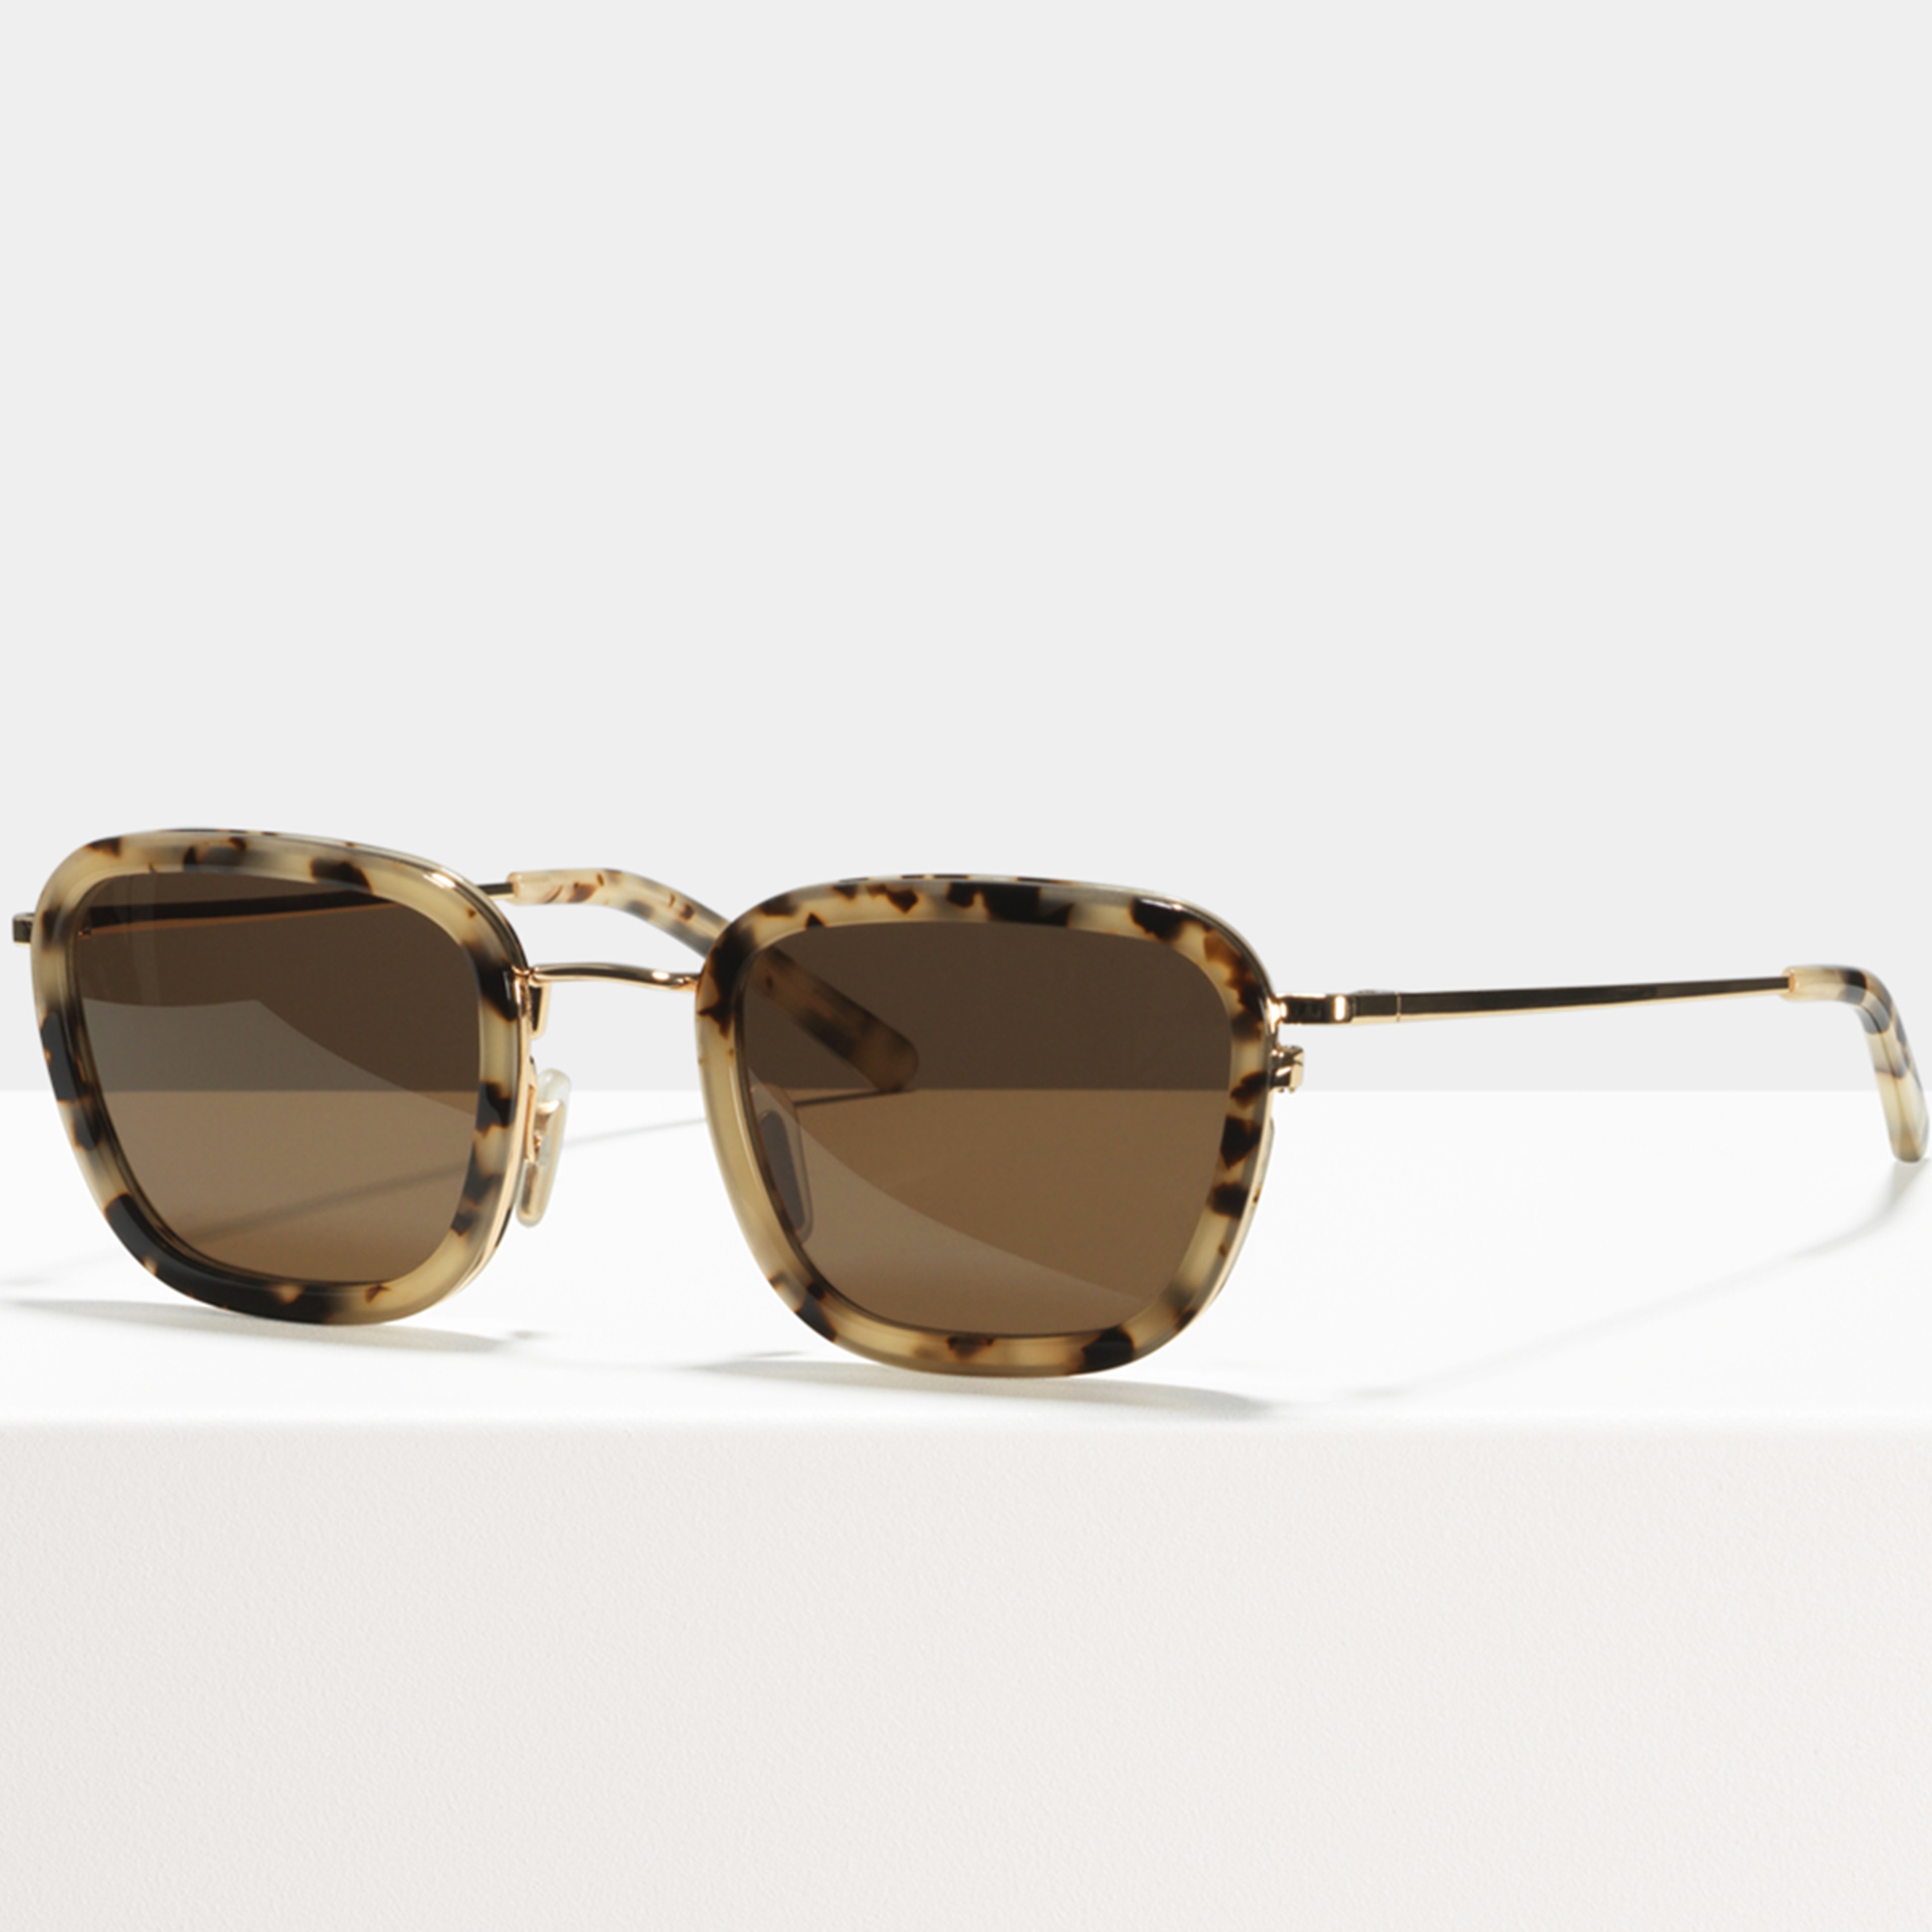 Ace & Tate Sunglasses | Square Acetate in Beige